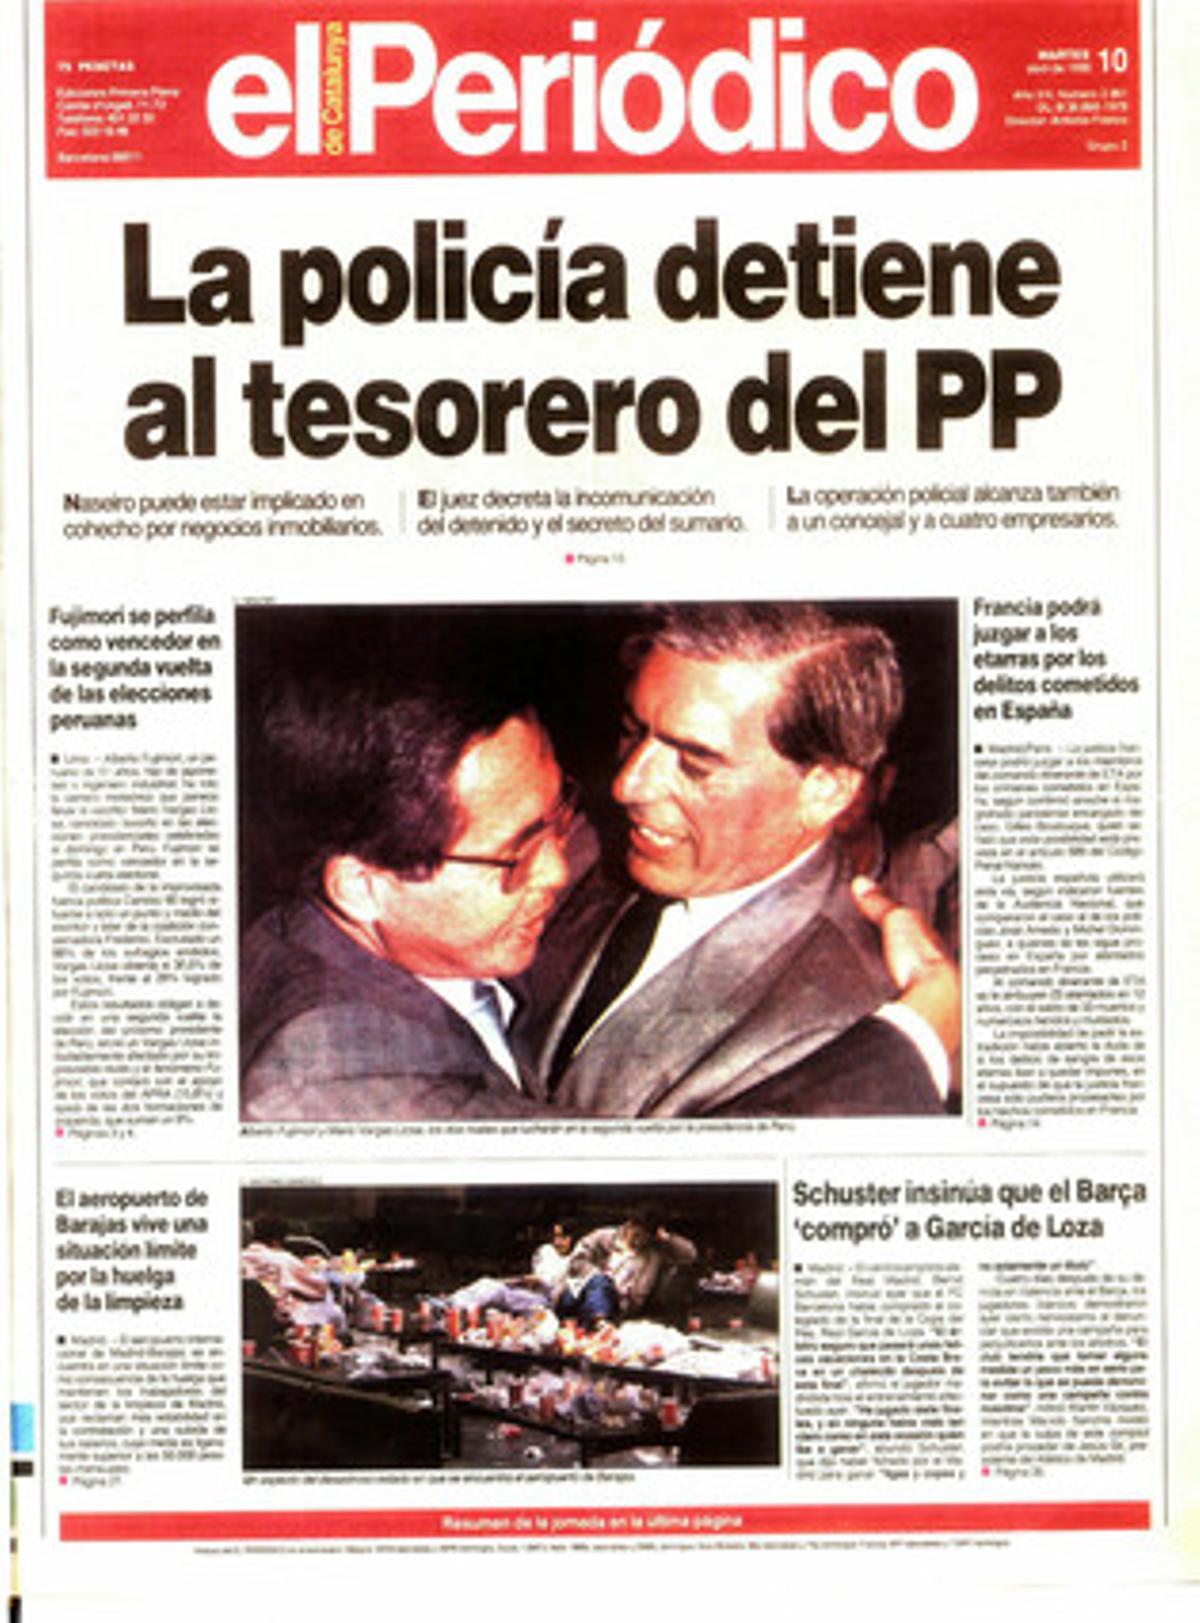 La policia deté el tresorer del PP. Naseiro pot estar implicat en suborn per negocis immobiliaris. Portada publicada el 10 d’abril de 1990.